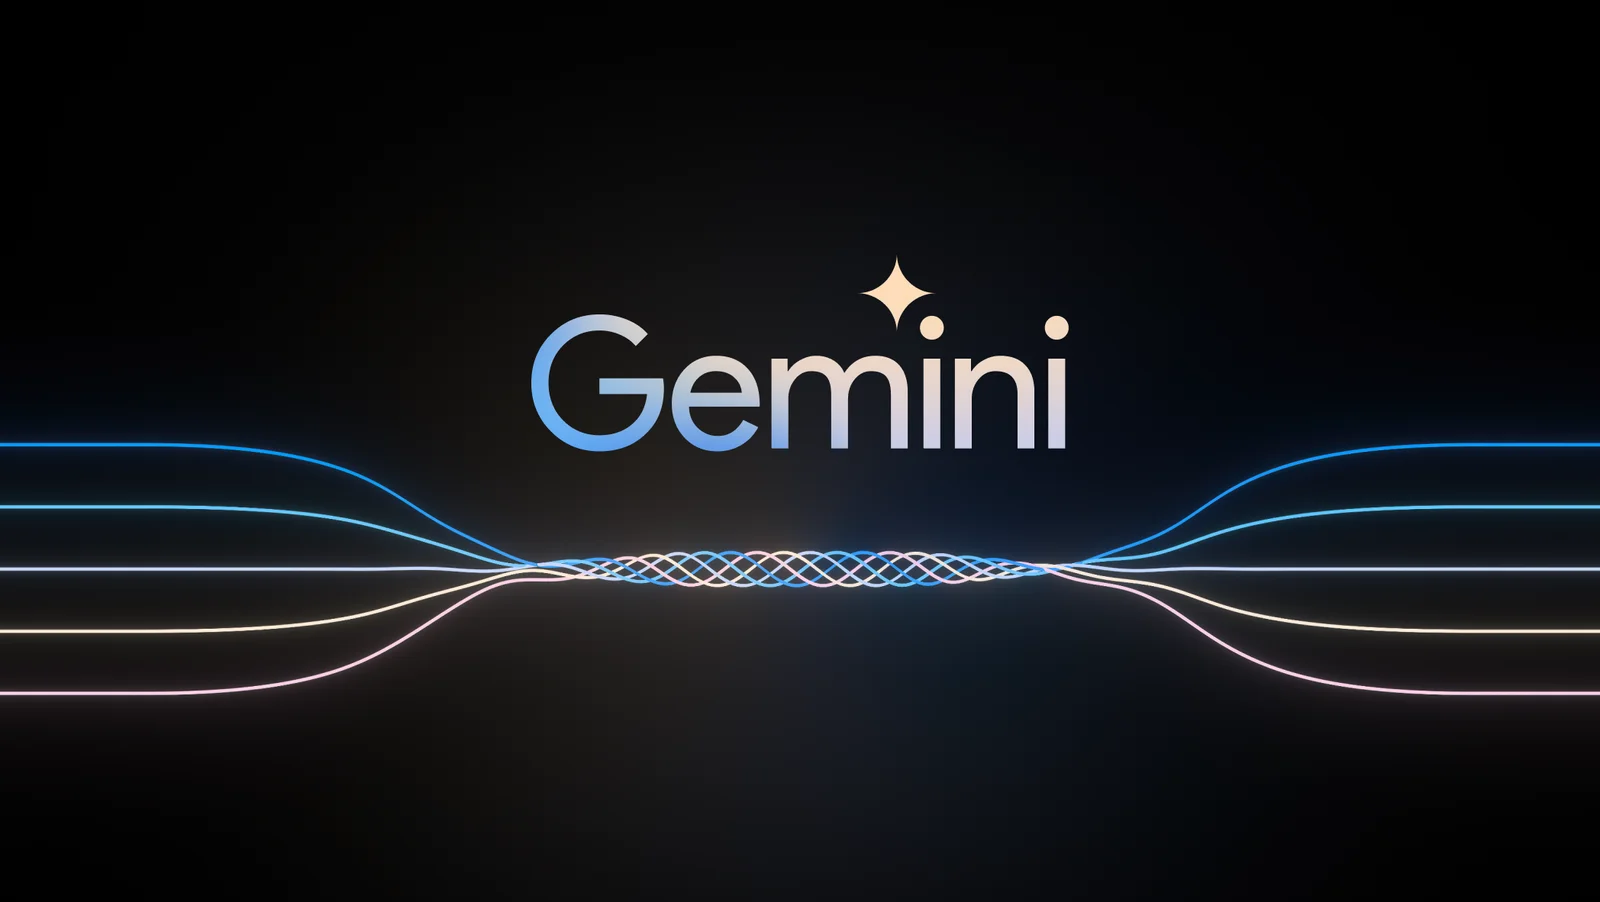 Google presenta Gemini, capaz de superar al humano en comprensión del lenguaje multitarea